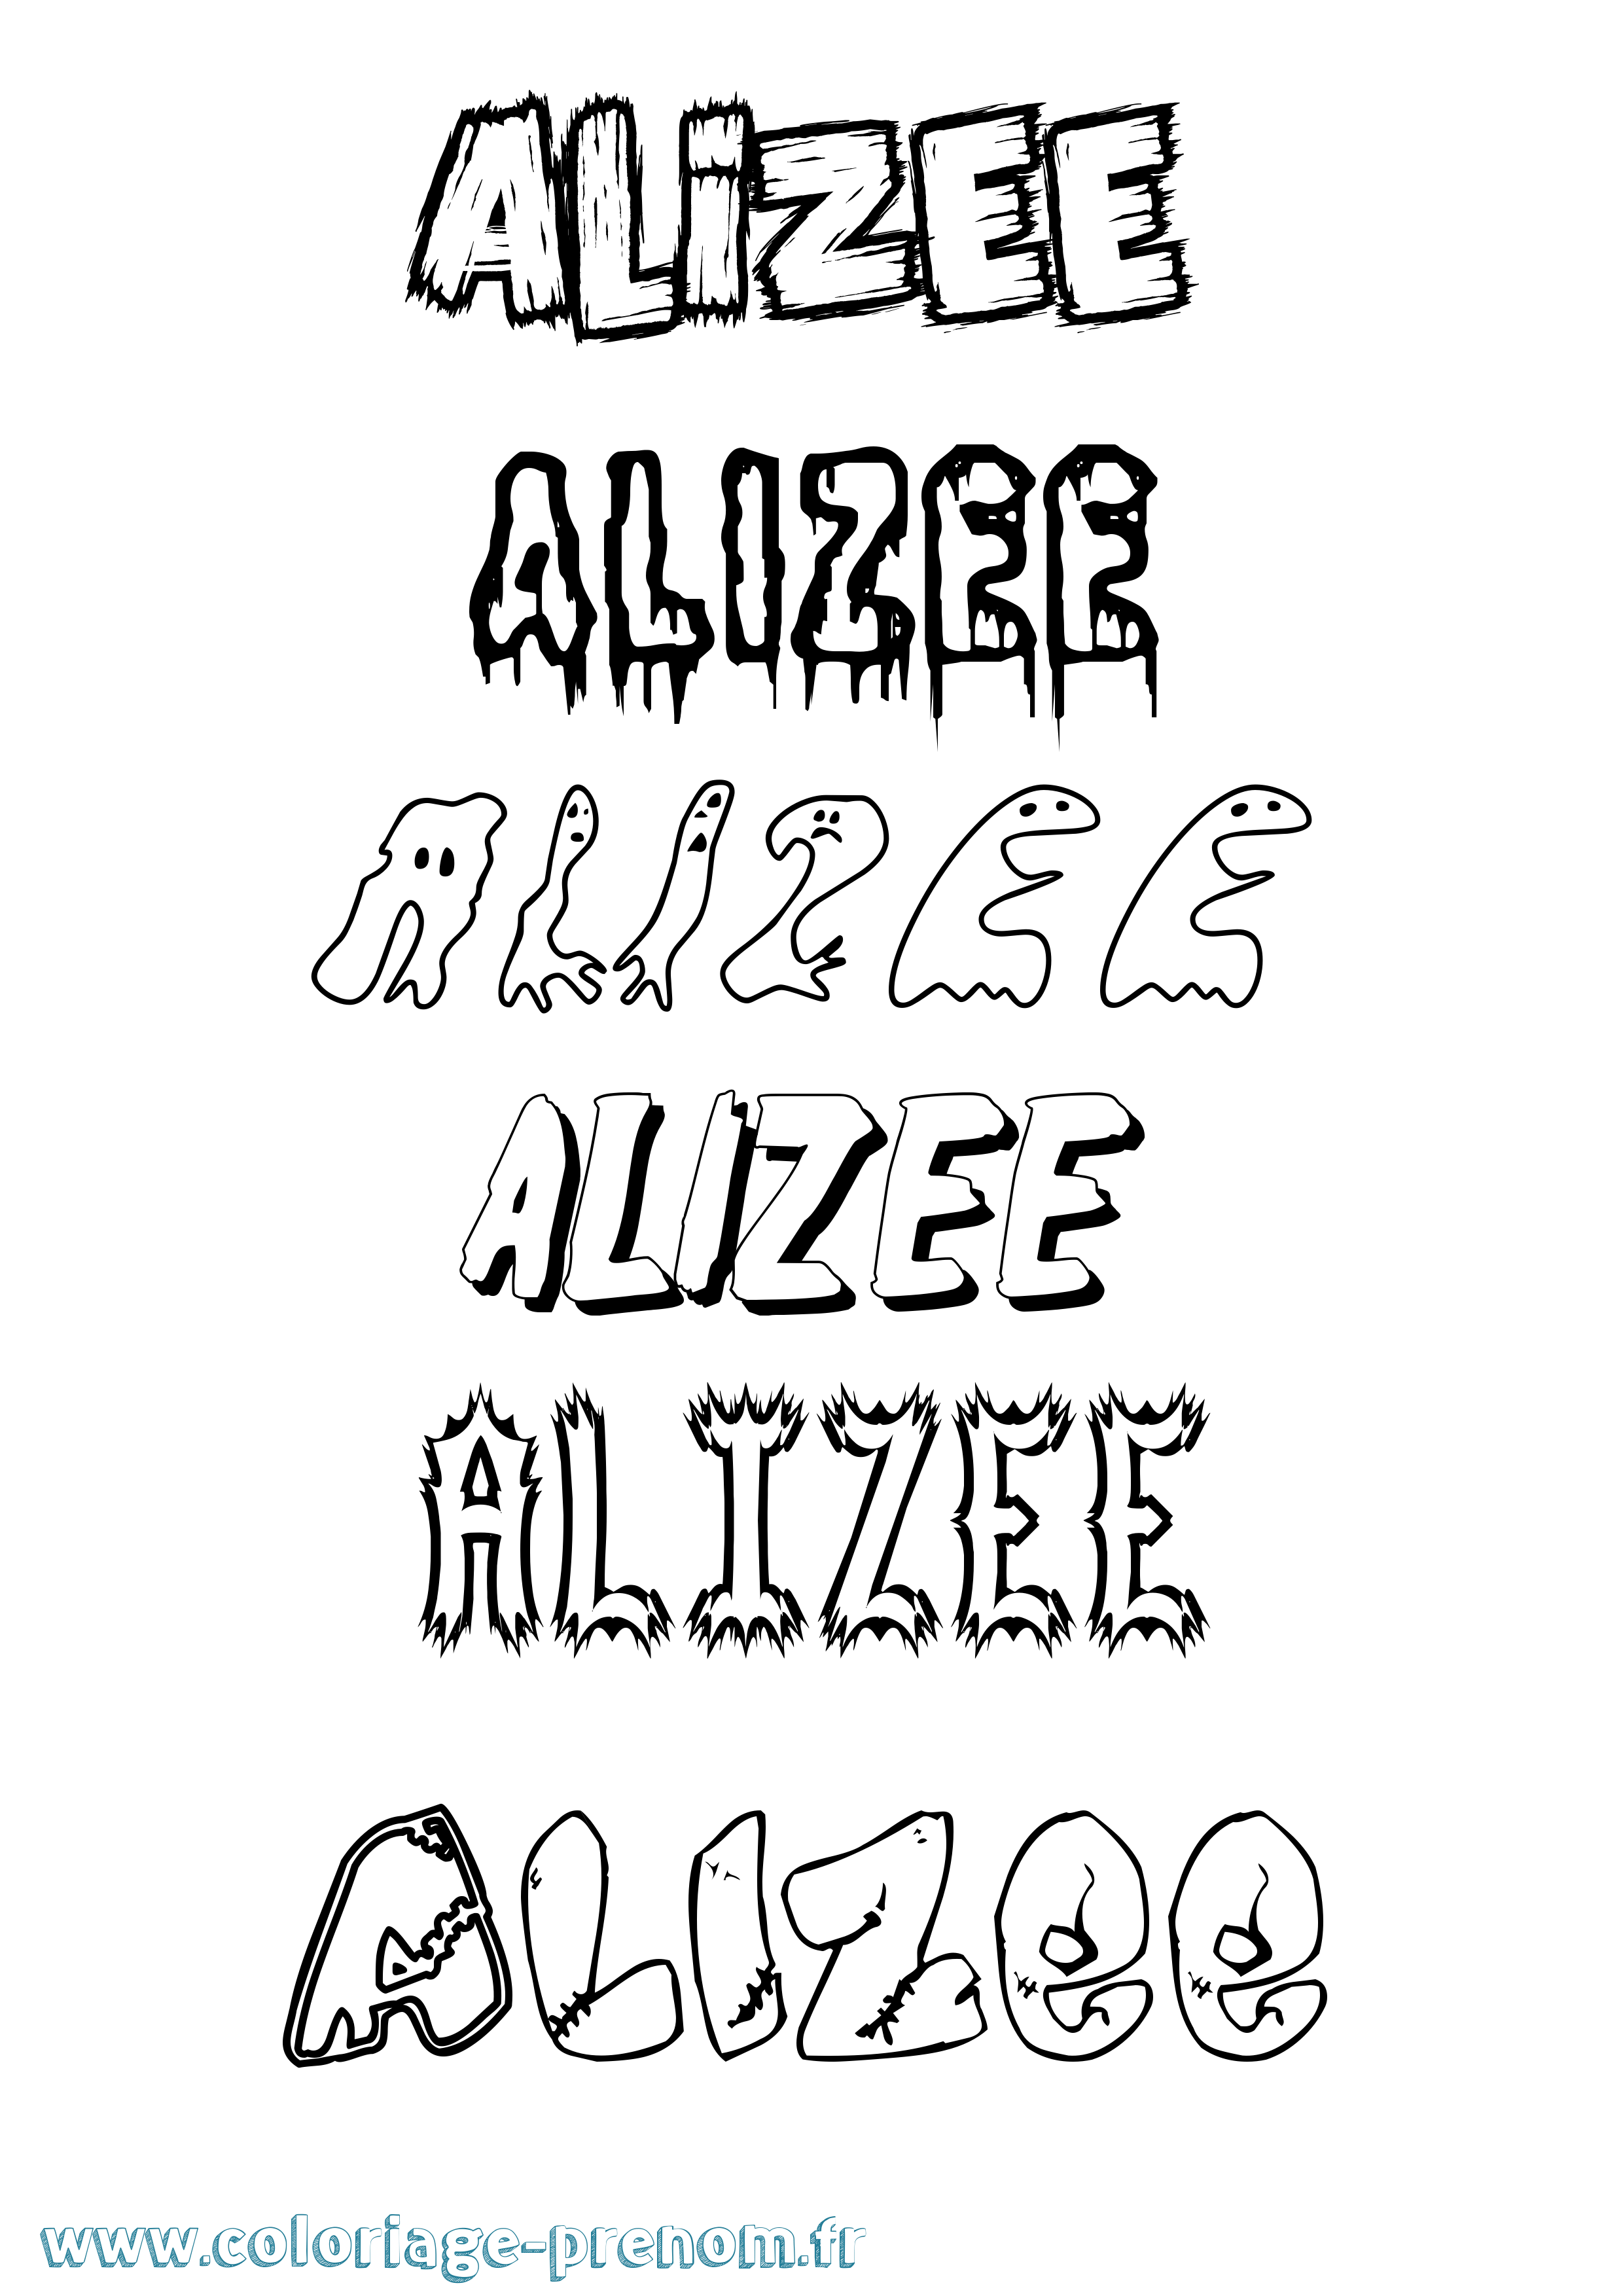 Coloriage prénom Alizee Frisson